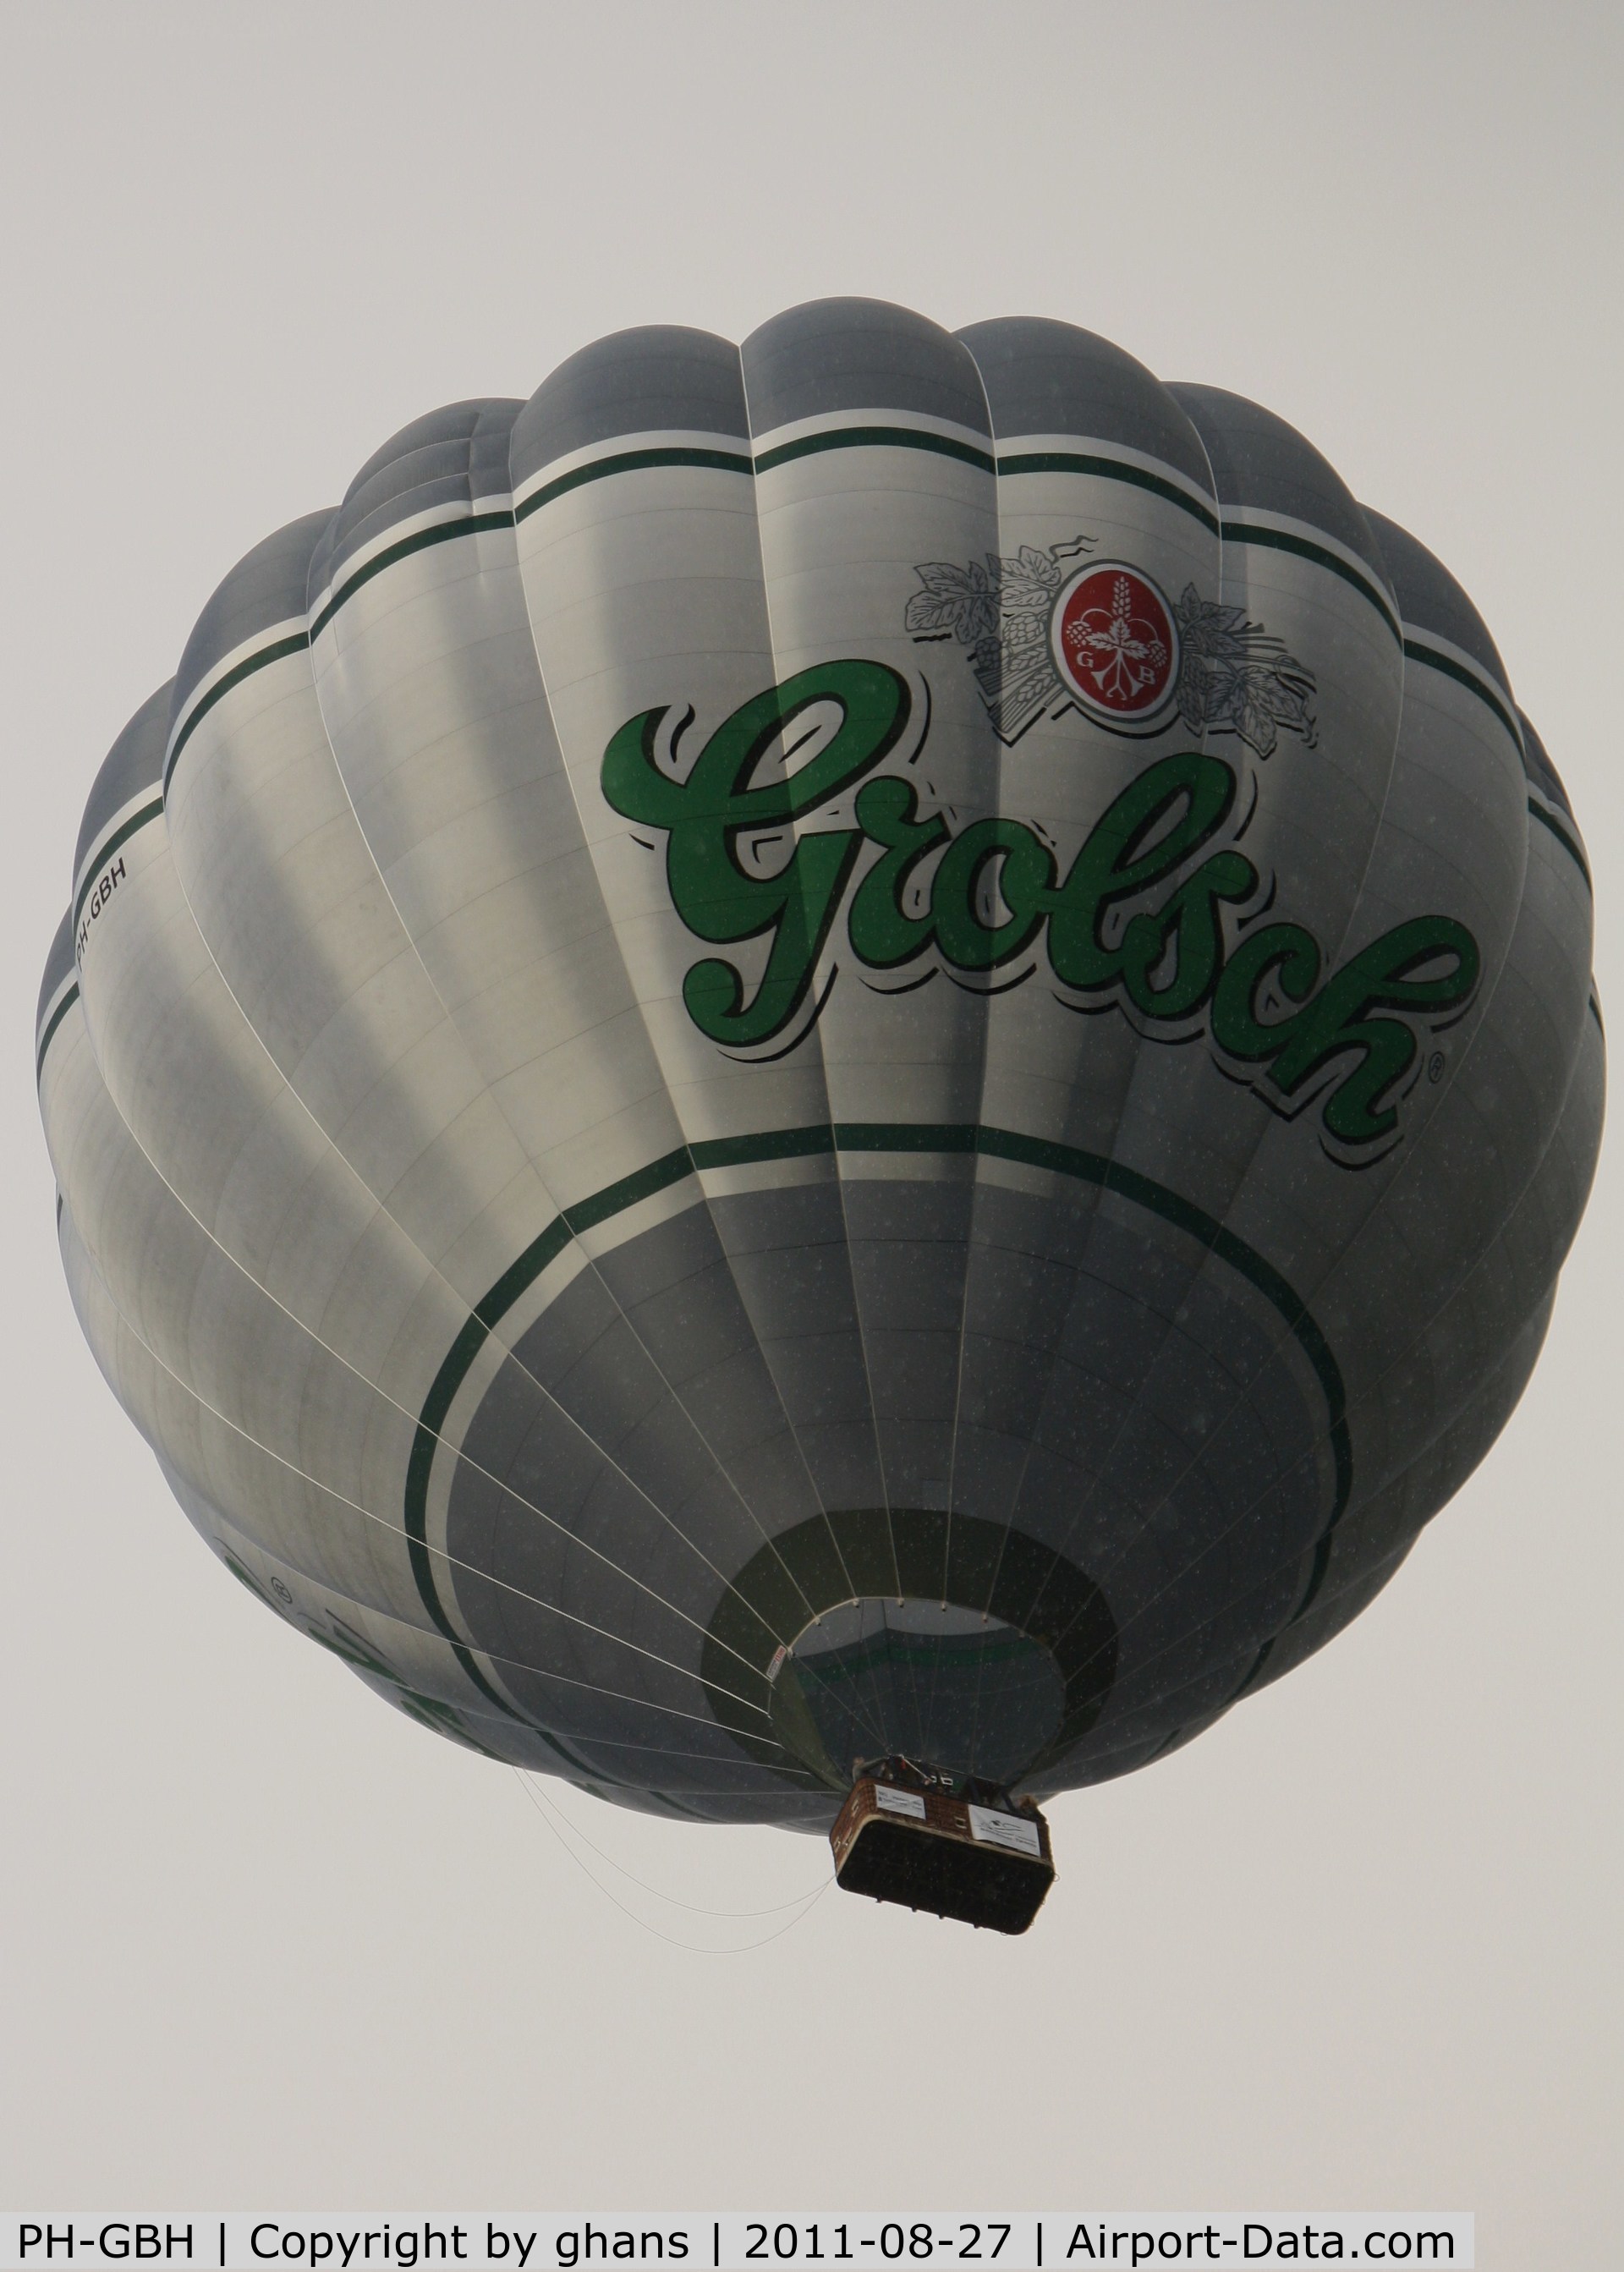 PH-GBH, 2007 Cameron Balloons A-300 C/N 11049, Grolsch